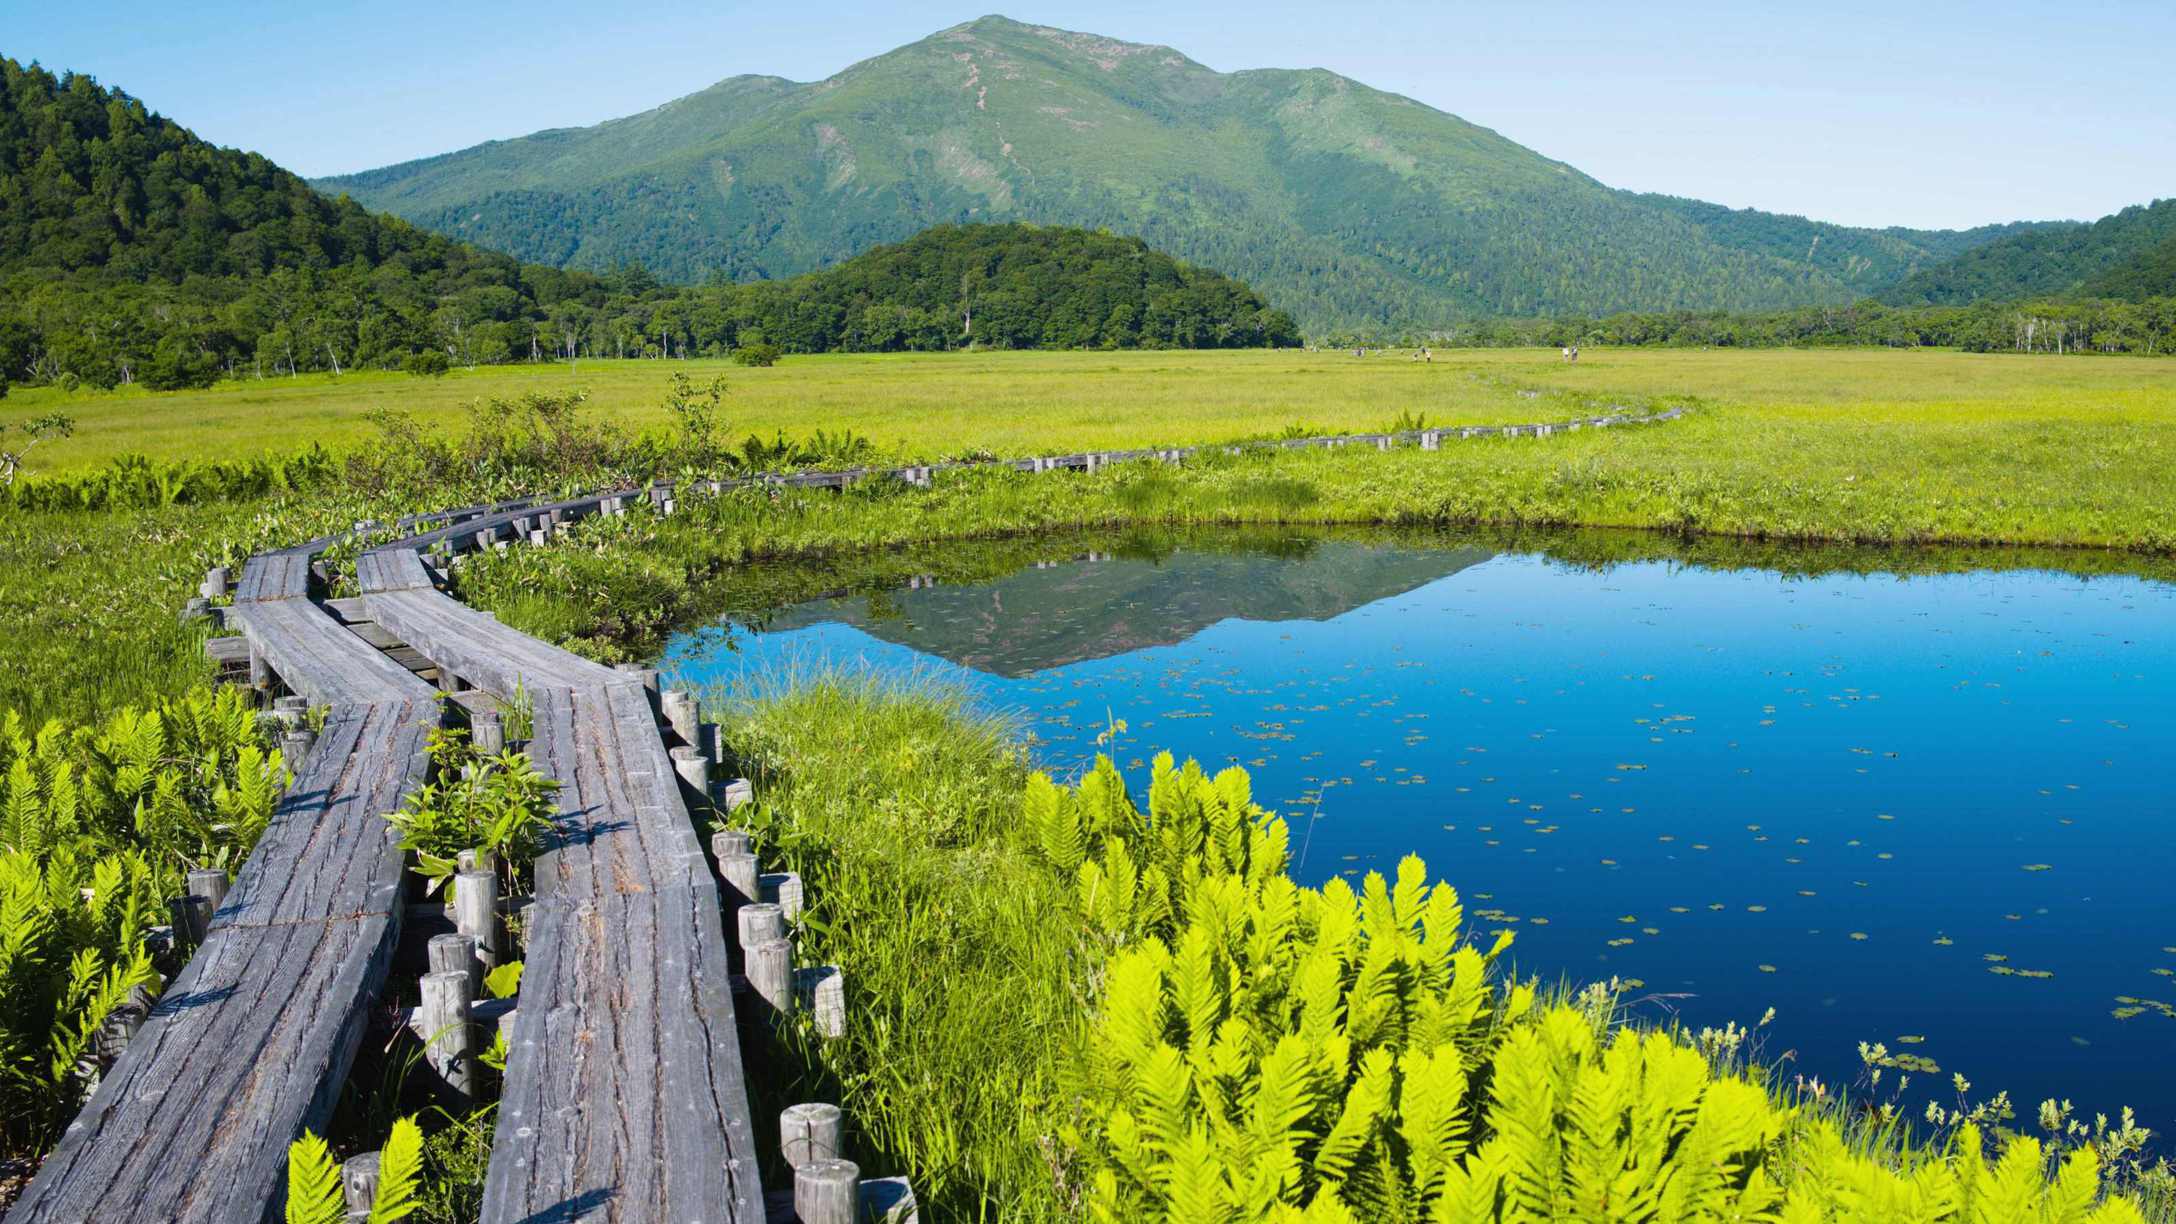 【夏・尾瀬国立公園】四季折々景観を変える日本最大級の山岳湿原。